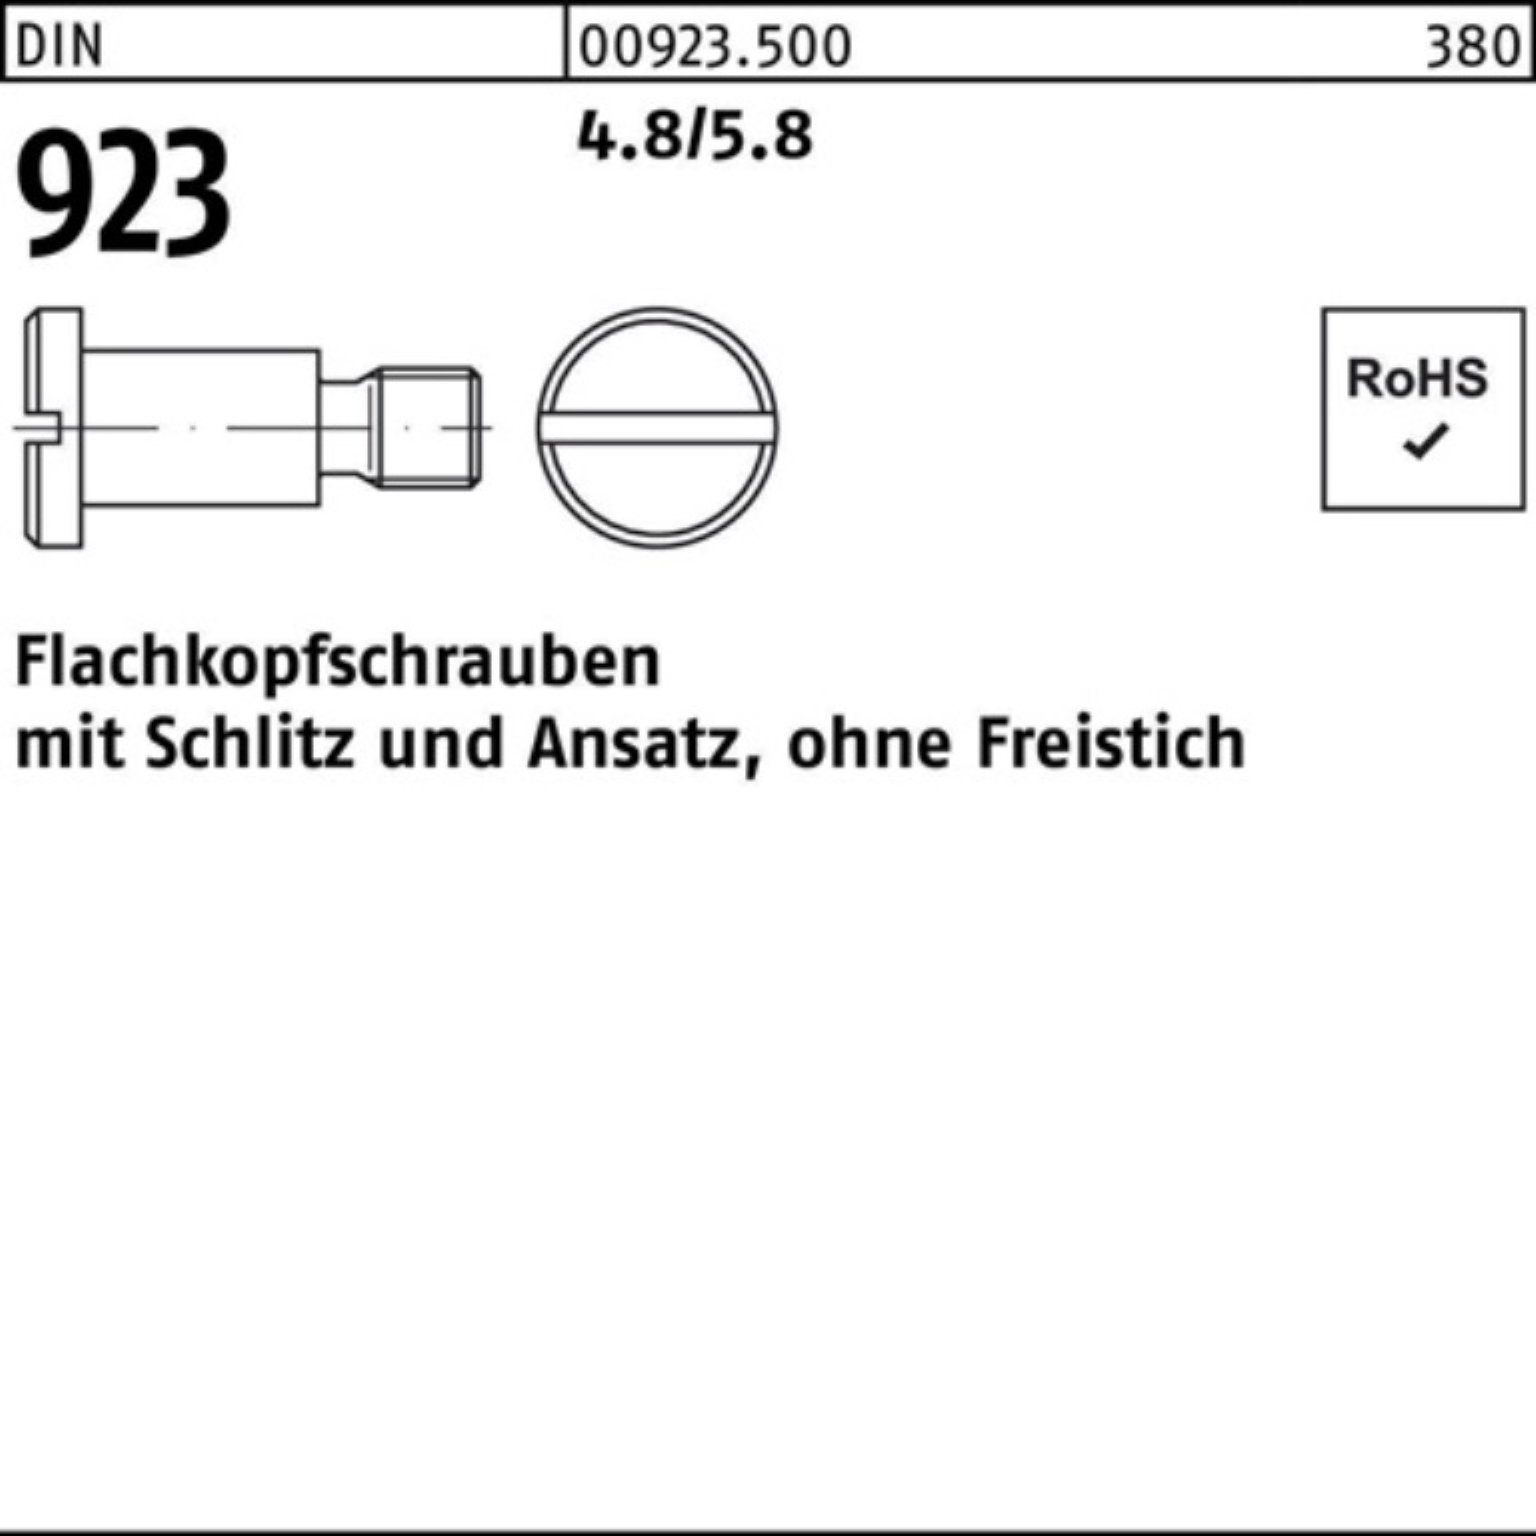 Reyher Schraube 100er Schlitz/Ansatz DIN 4.8/5.8 4x M6x Pack 9,0 Flachkopfschraube 923